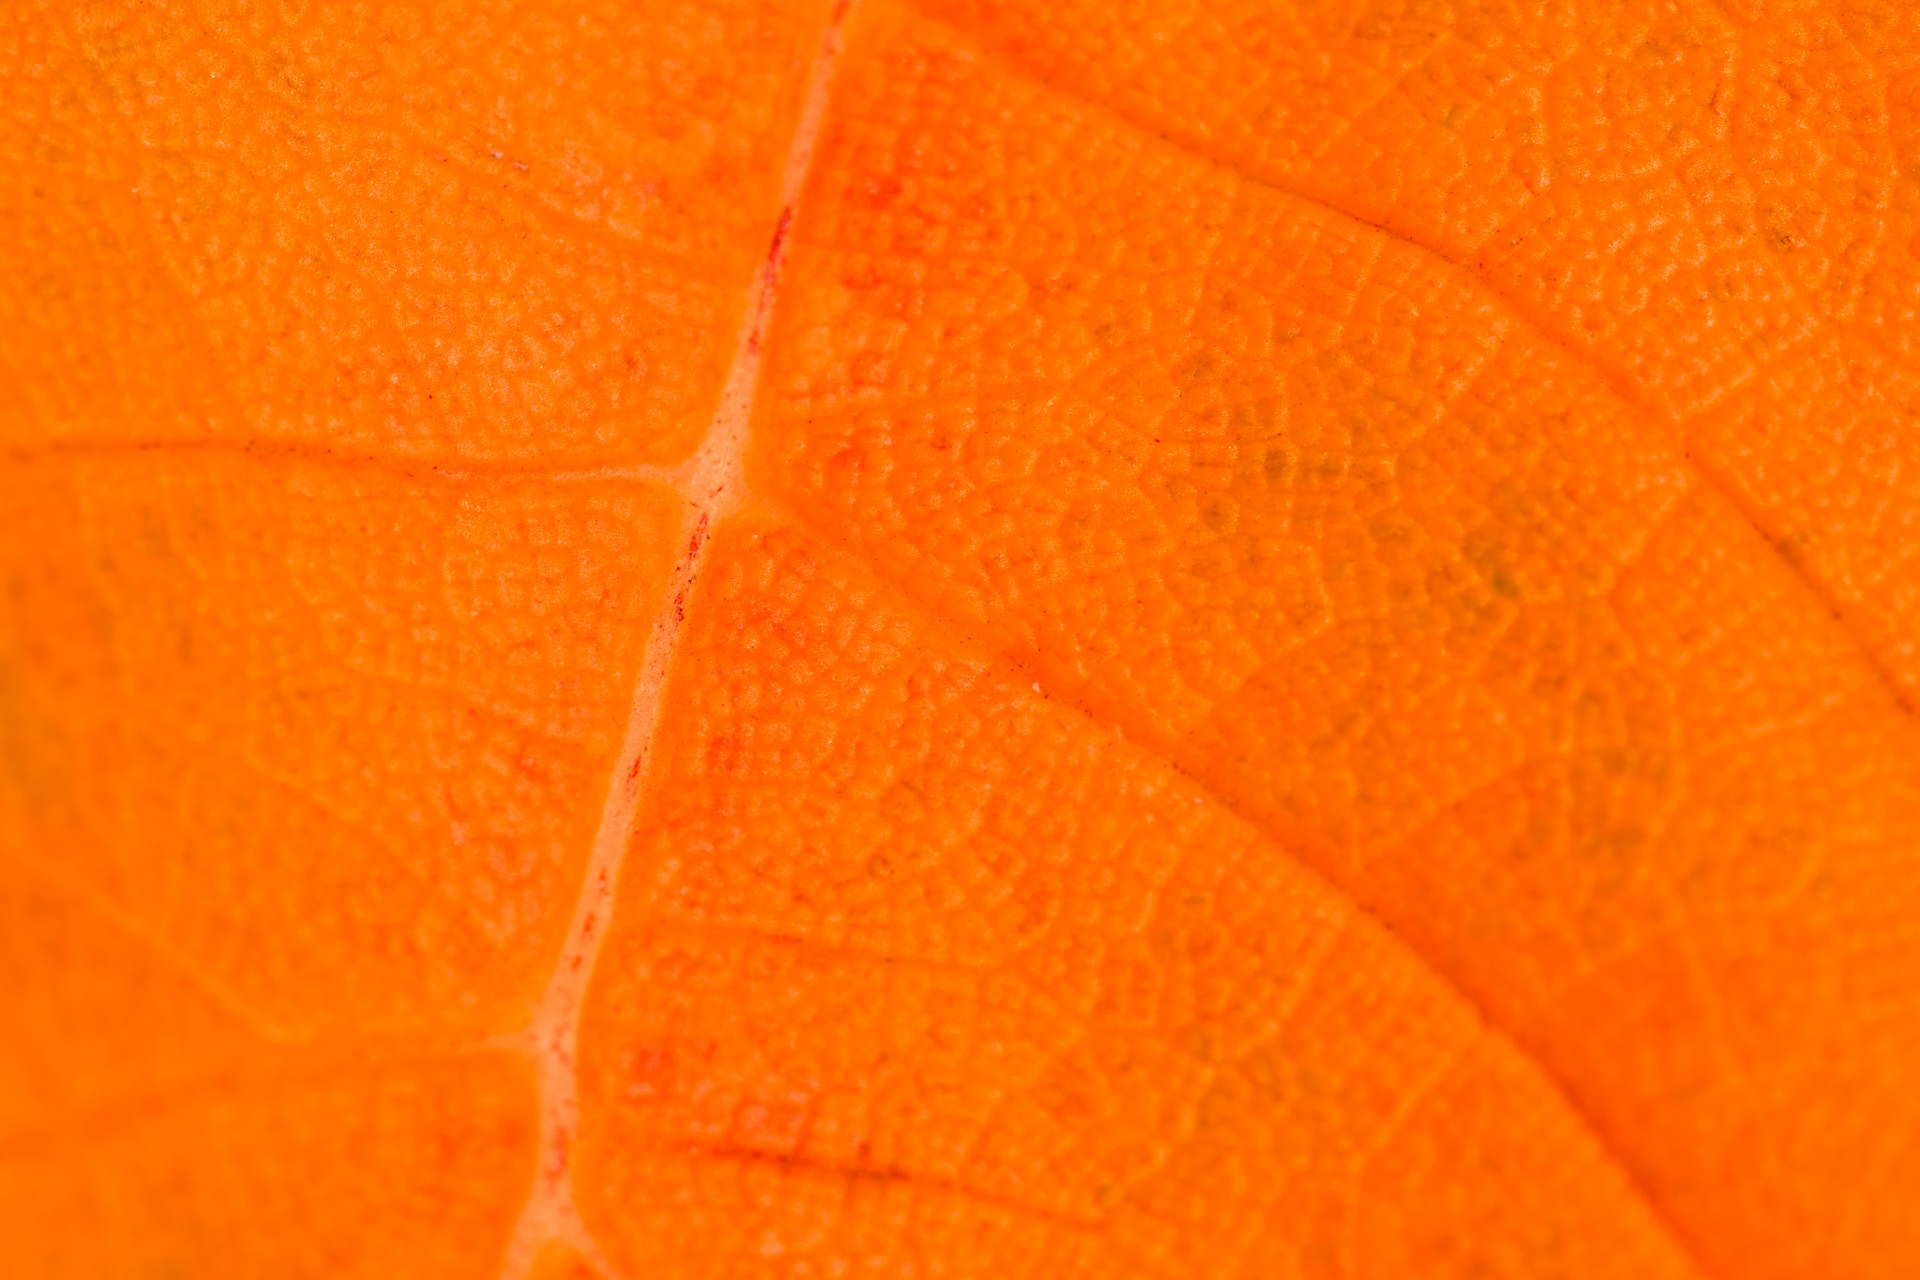 Оранжевый 1 1 20 август 2021. Оранжевый лист. Оранжевый листочек. Апельсиновые листья. Осенний лист оранжевого цвета.